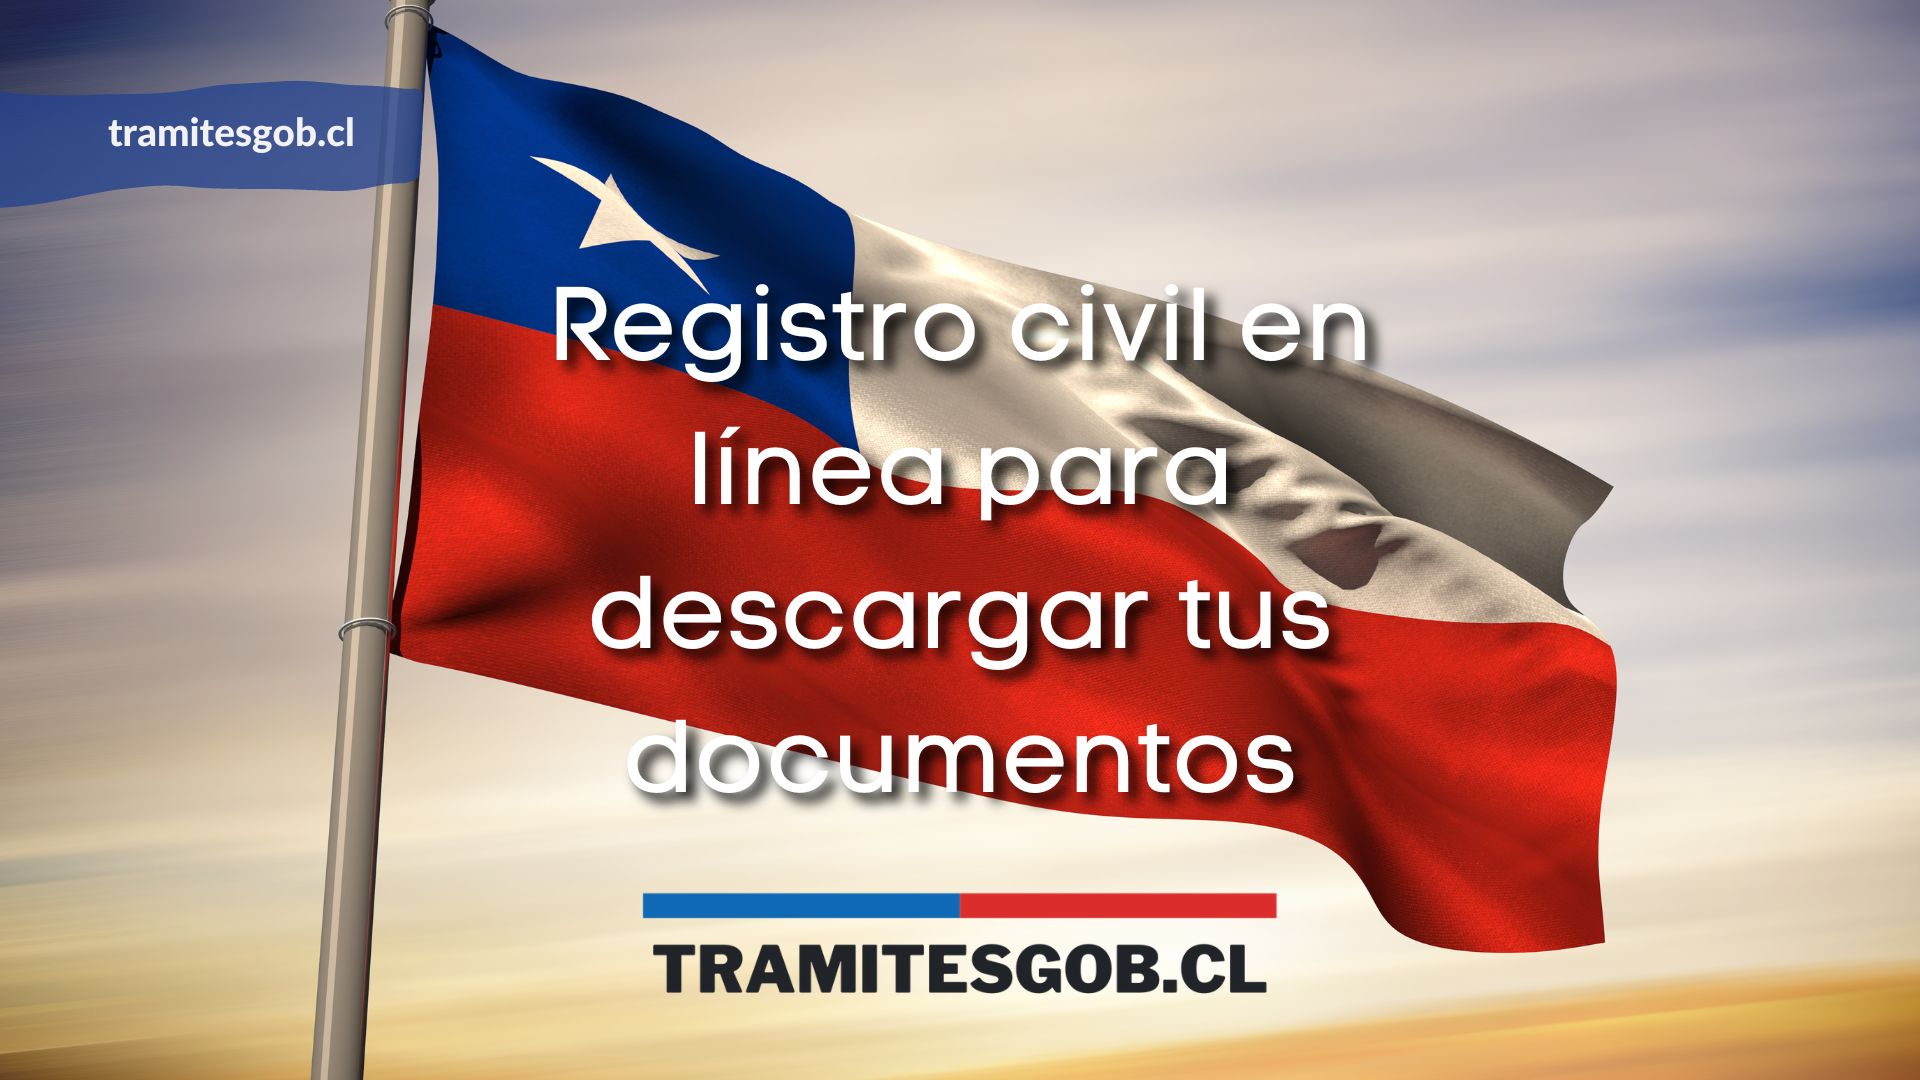 Registro civil en línea para descargar tus documentos